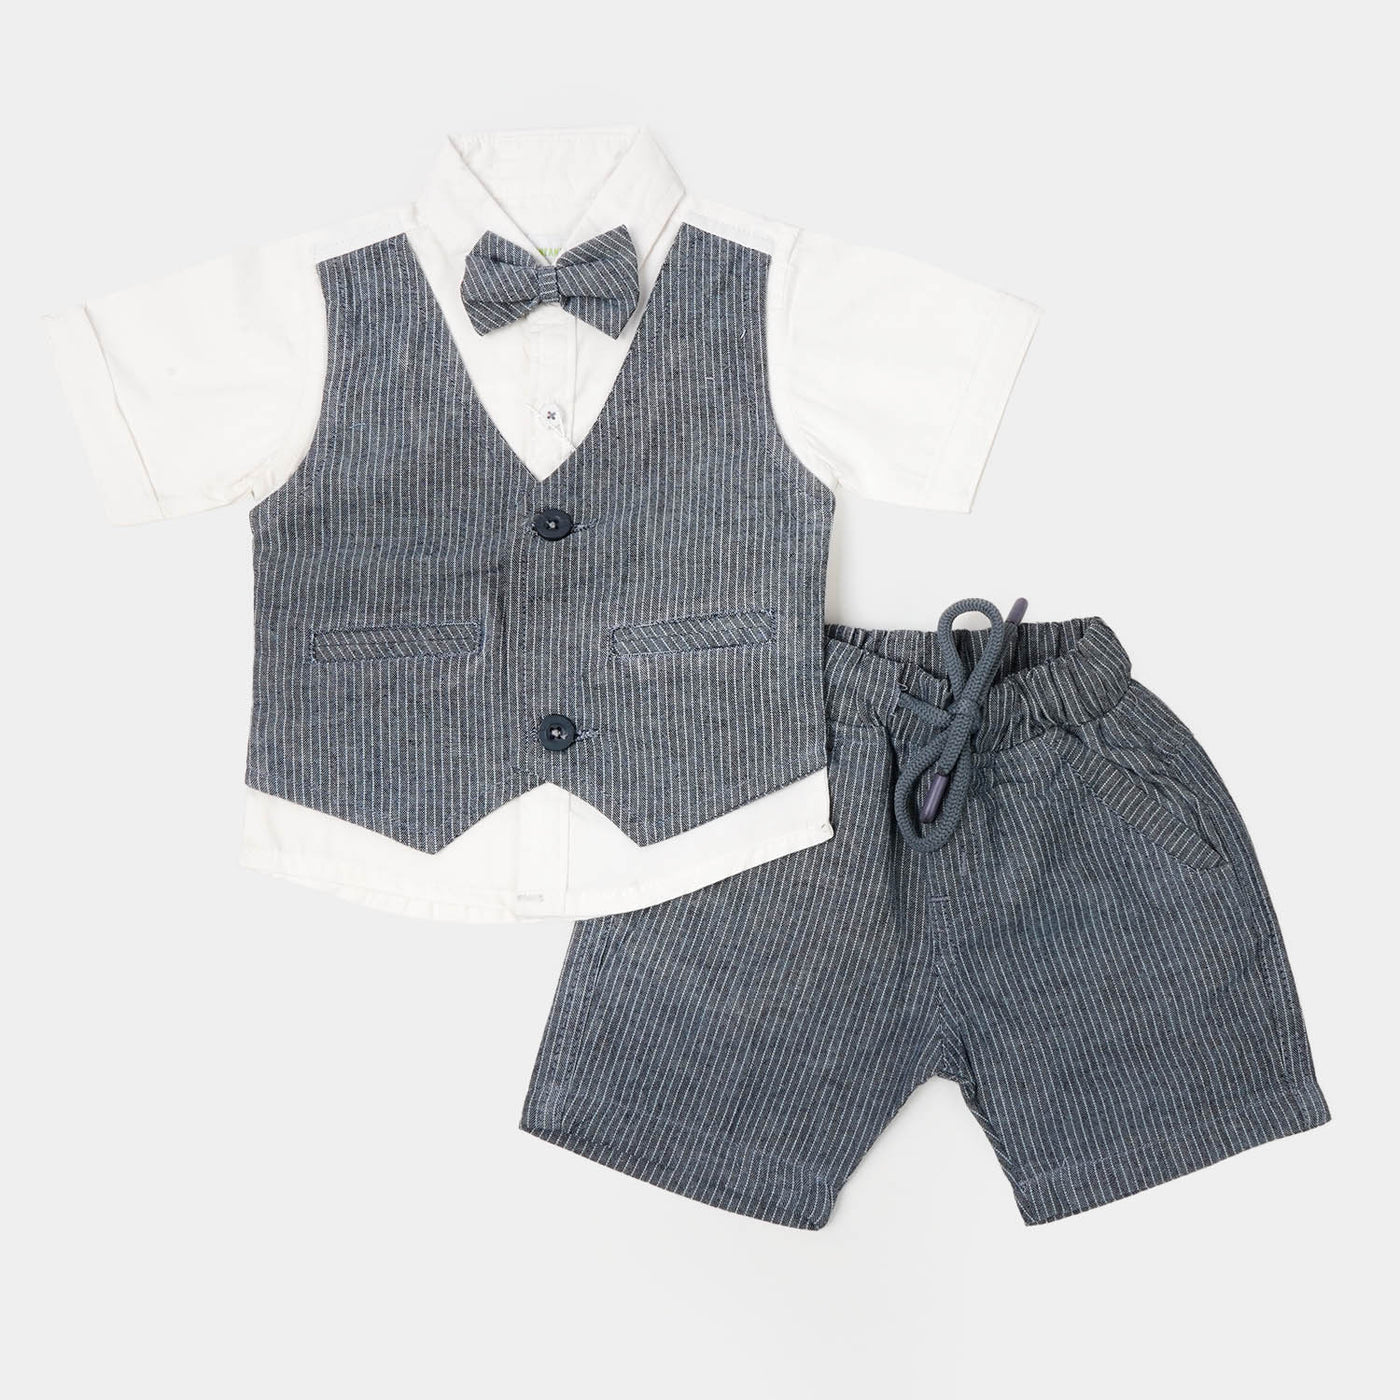 Infant Boys Cotton Suit - GREY